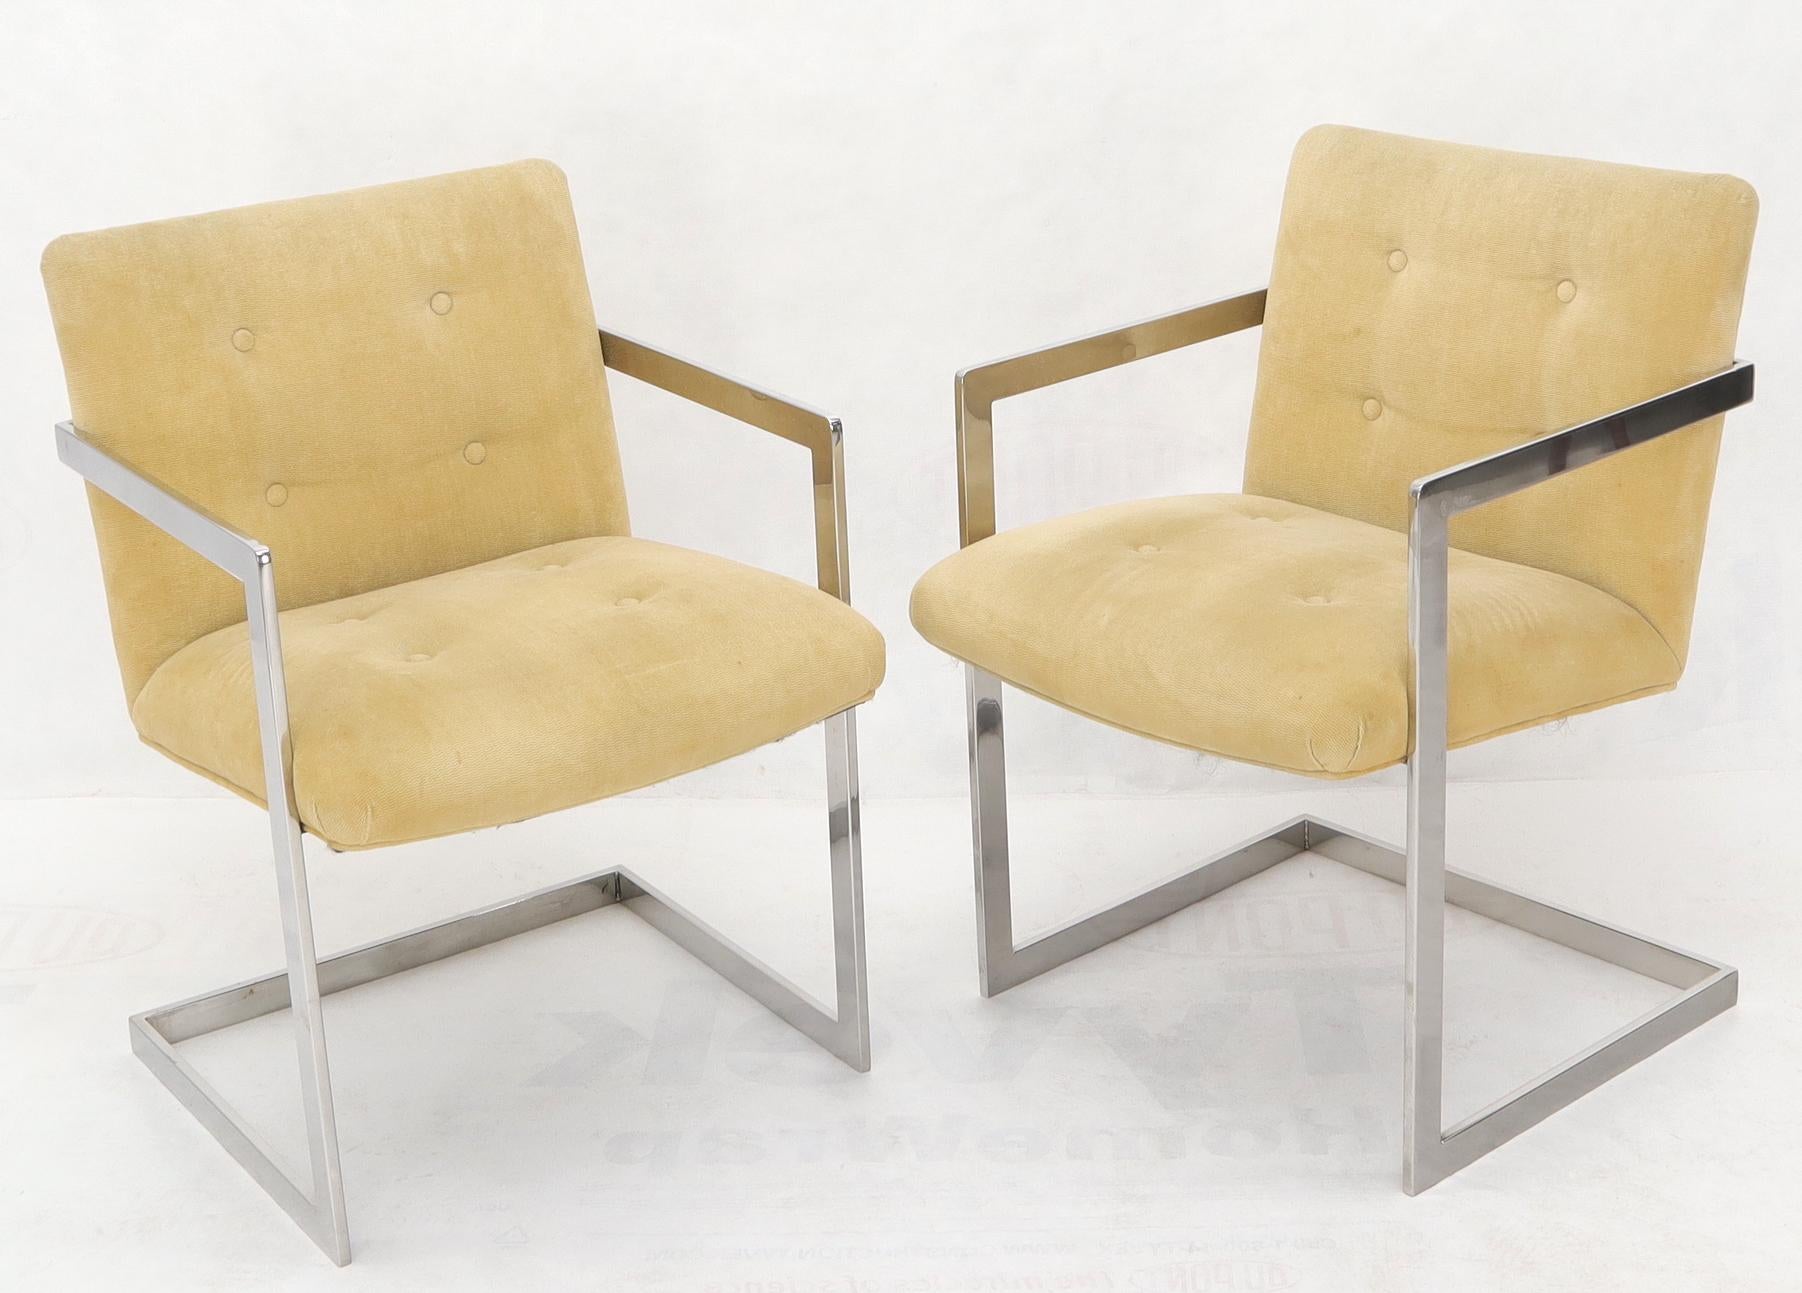 Milo Baughman zugeschriebenes Ess- oder Konferenzzimmer-Set, bestehend aus 8 verchromten gepolsterten Stühlen und einem quadratischen 60x60 Esstisch. Die Stühle sind mit einem hellgoldenen bis kamelgelben Wildlederstoff bezogen.